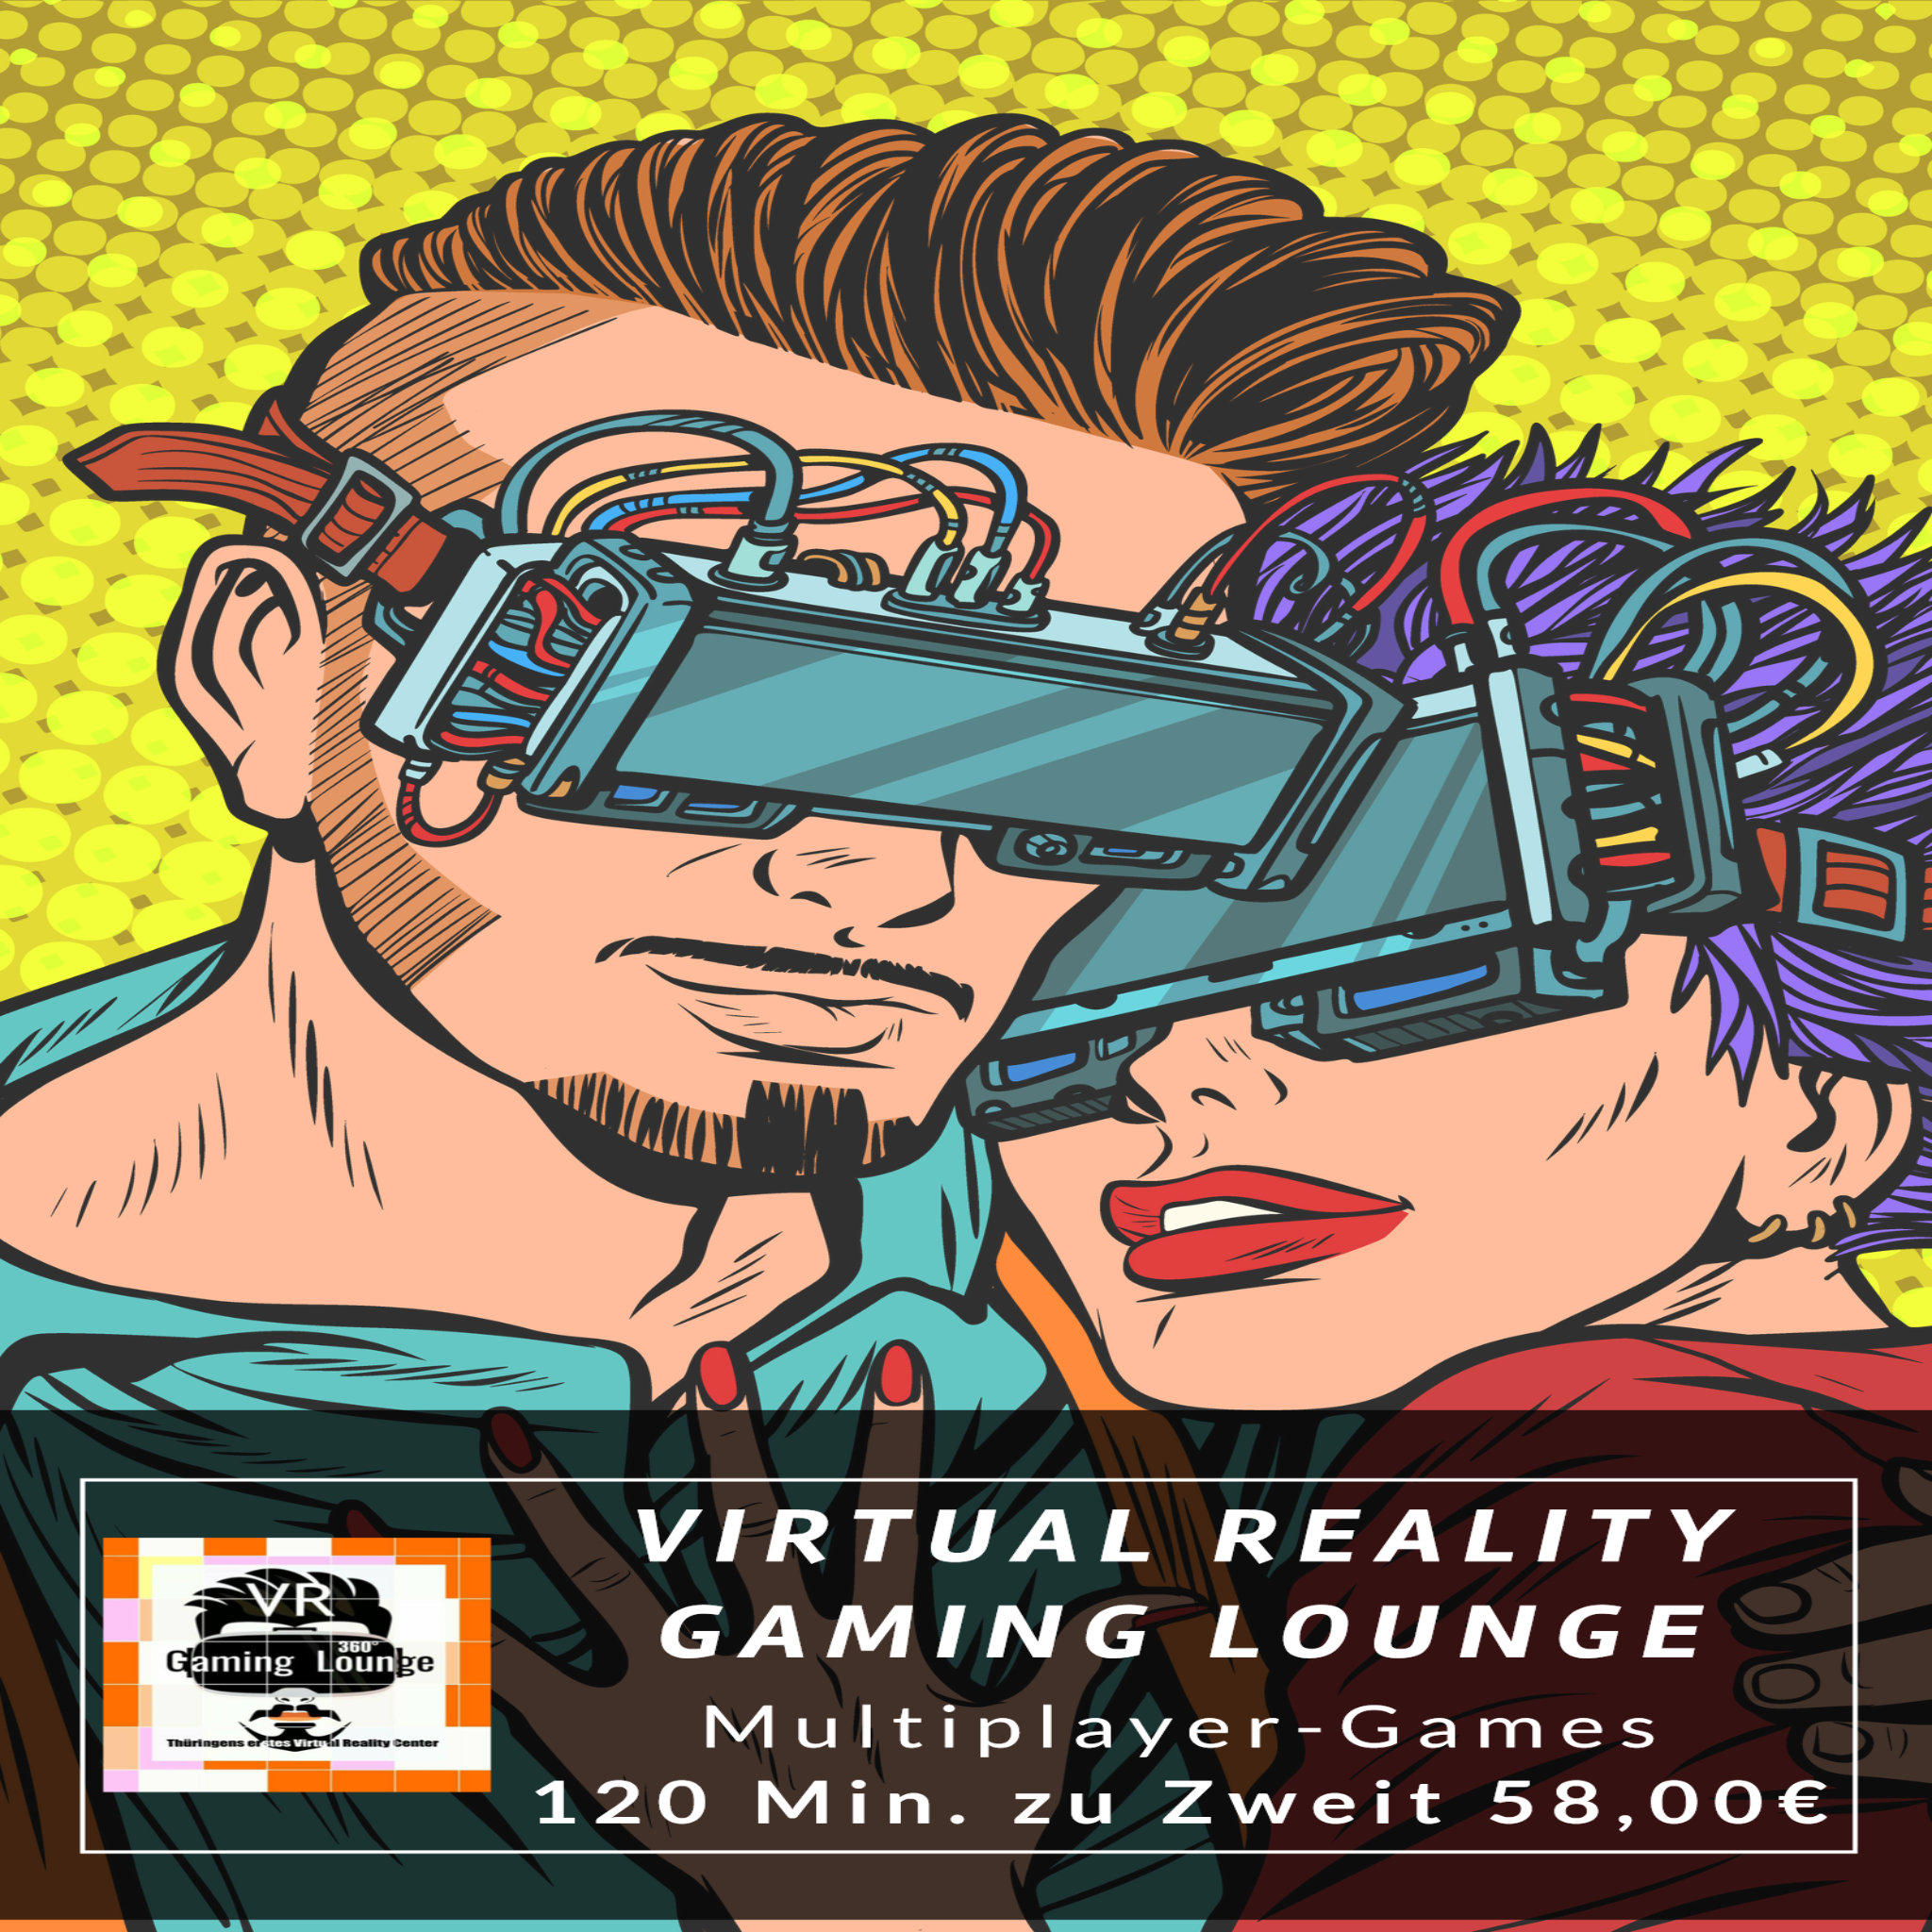 VR Gaming Lounge